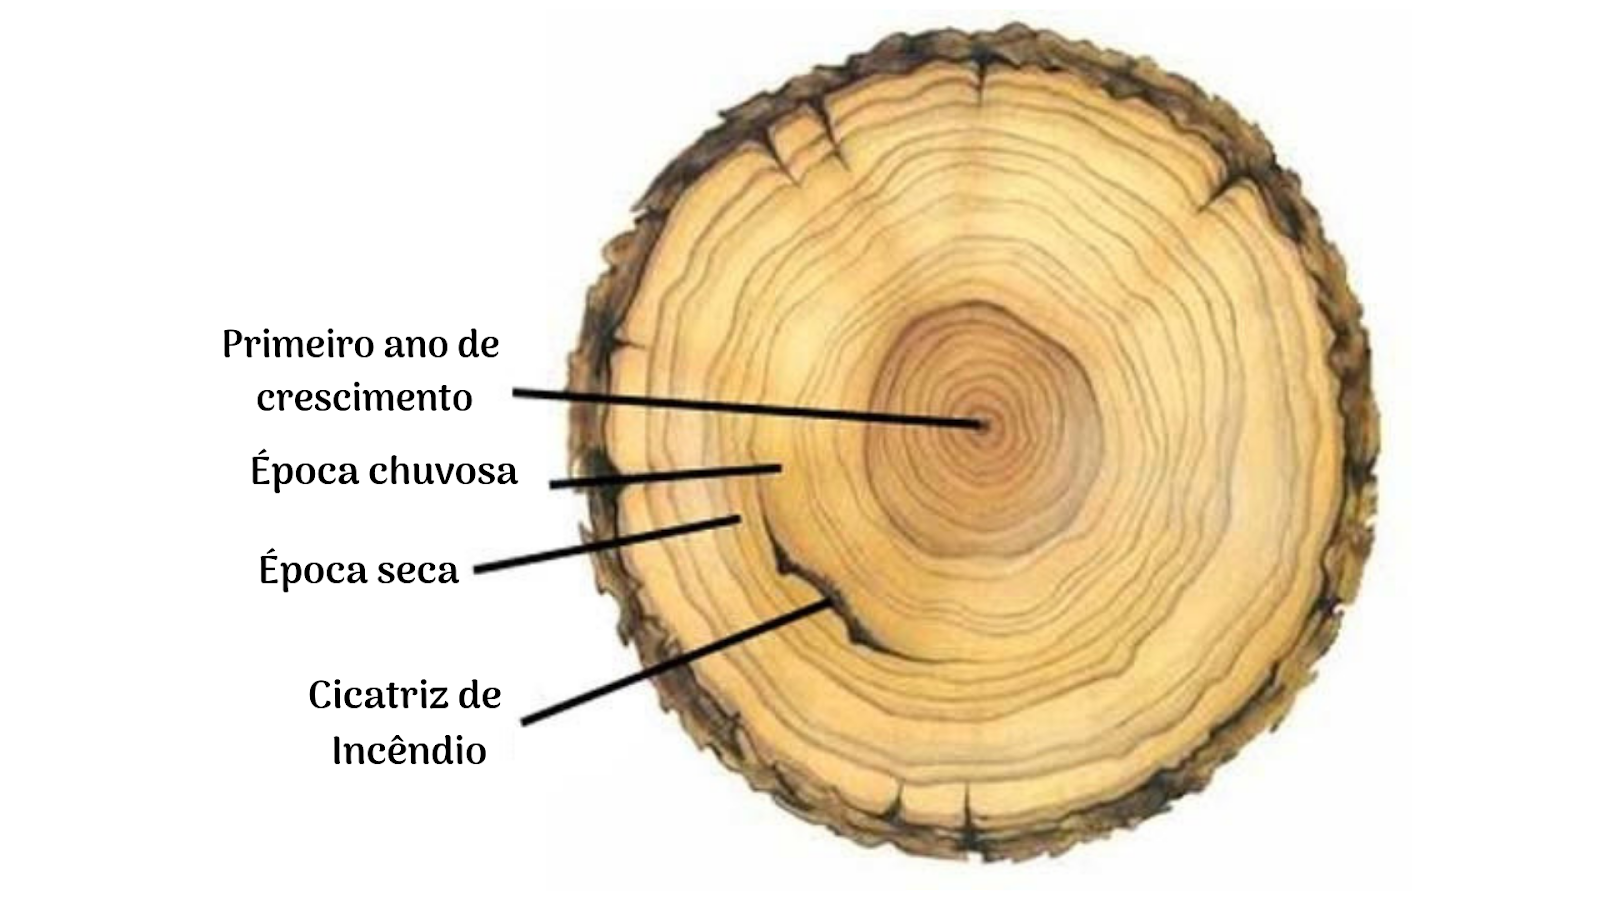  Dendrologia Estudando O Passado Atrav s Das rvores Florestal Brasil